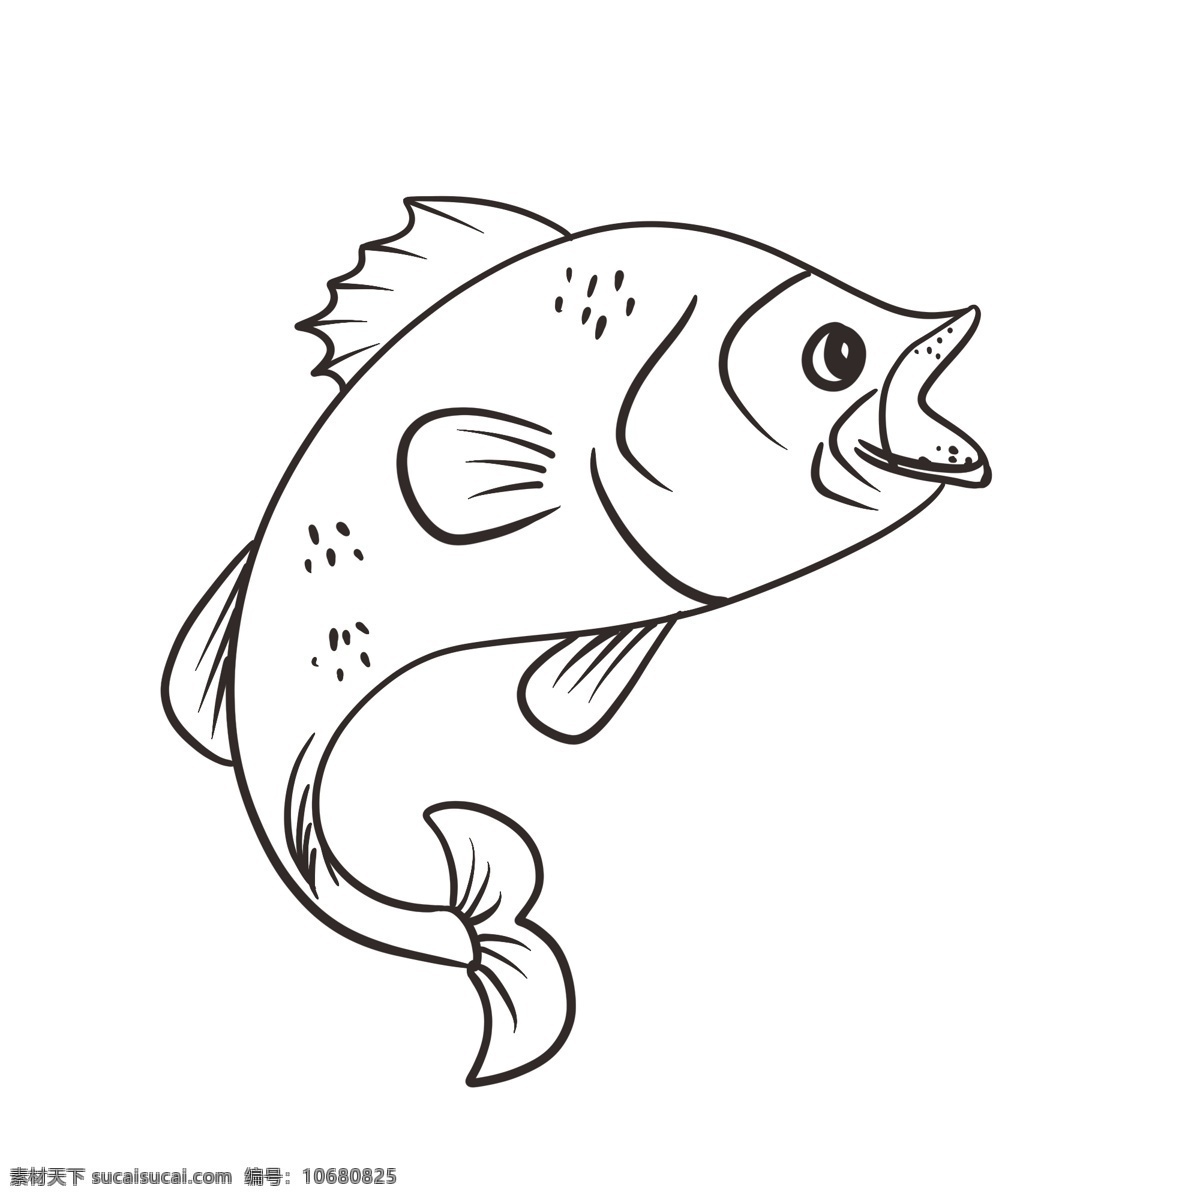 鱼 黑白 线 稿 手绘 插画 线稿 金鱼 鲤鱼 丑鱼 小鱼 海洋 海鲜 鱼儿 装饰 图案 卡通 鱼尾巴 鱼跃